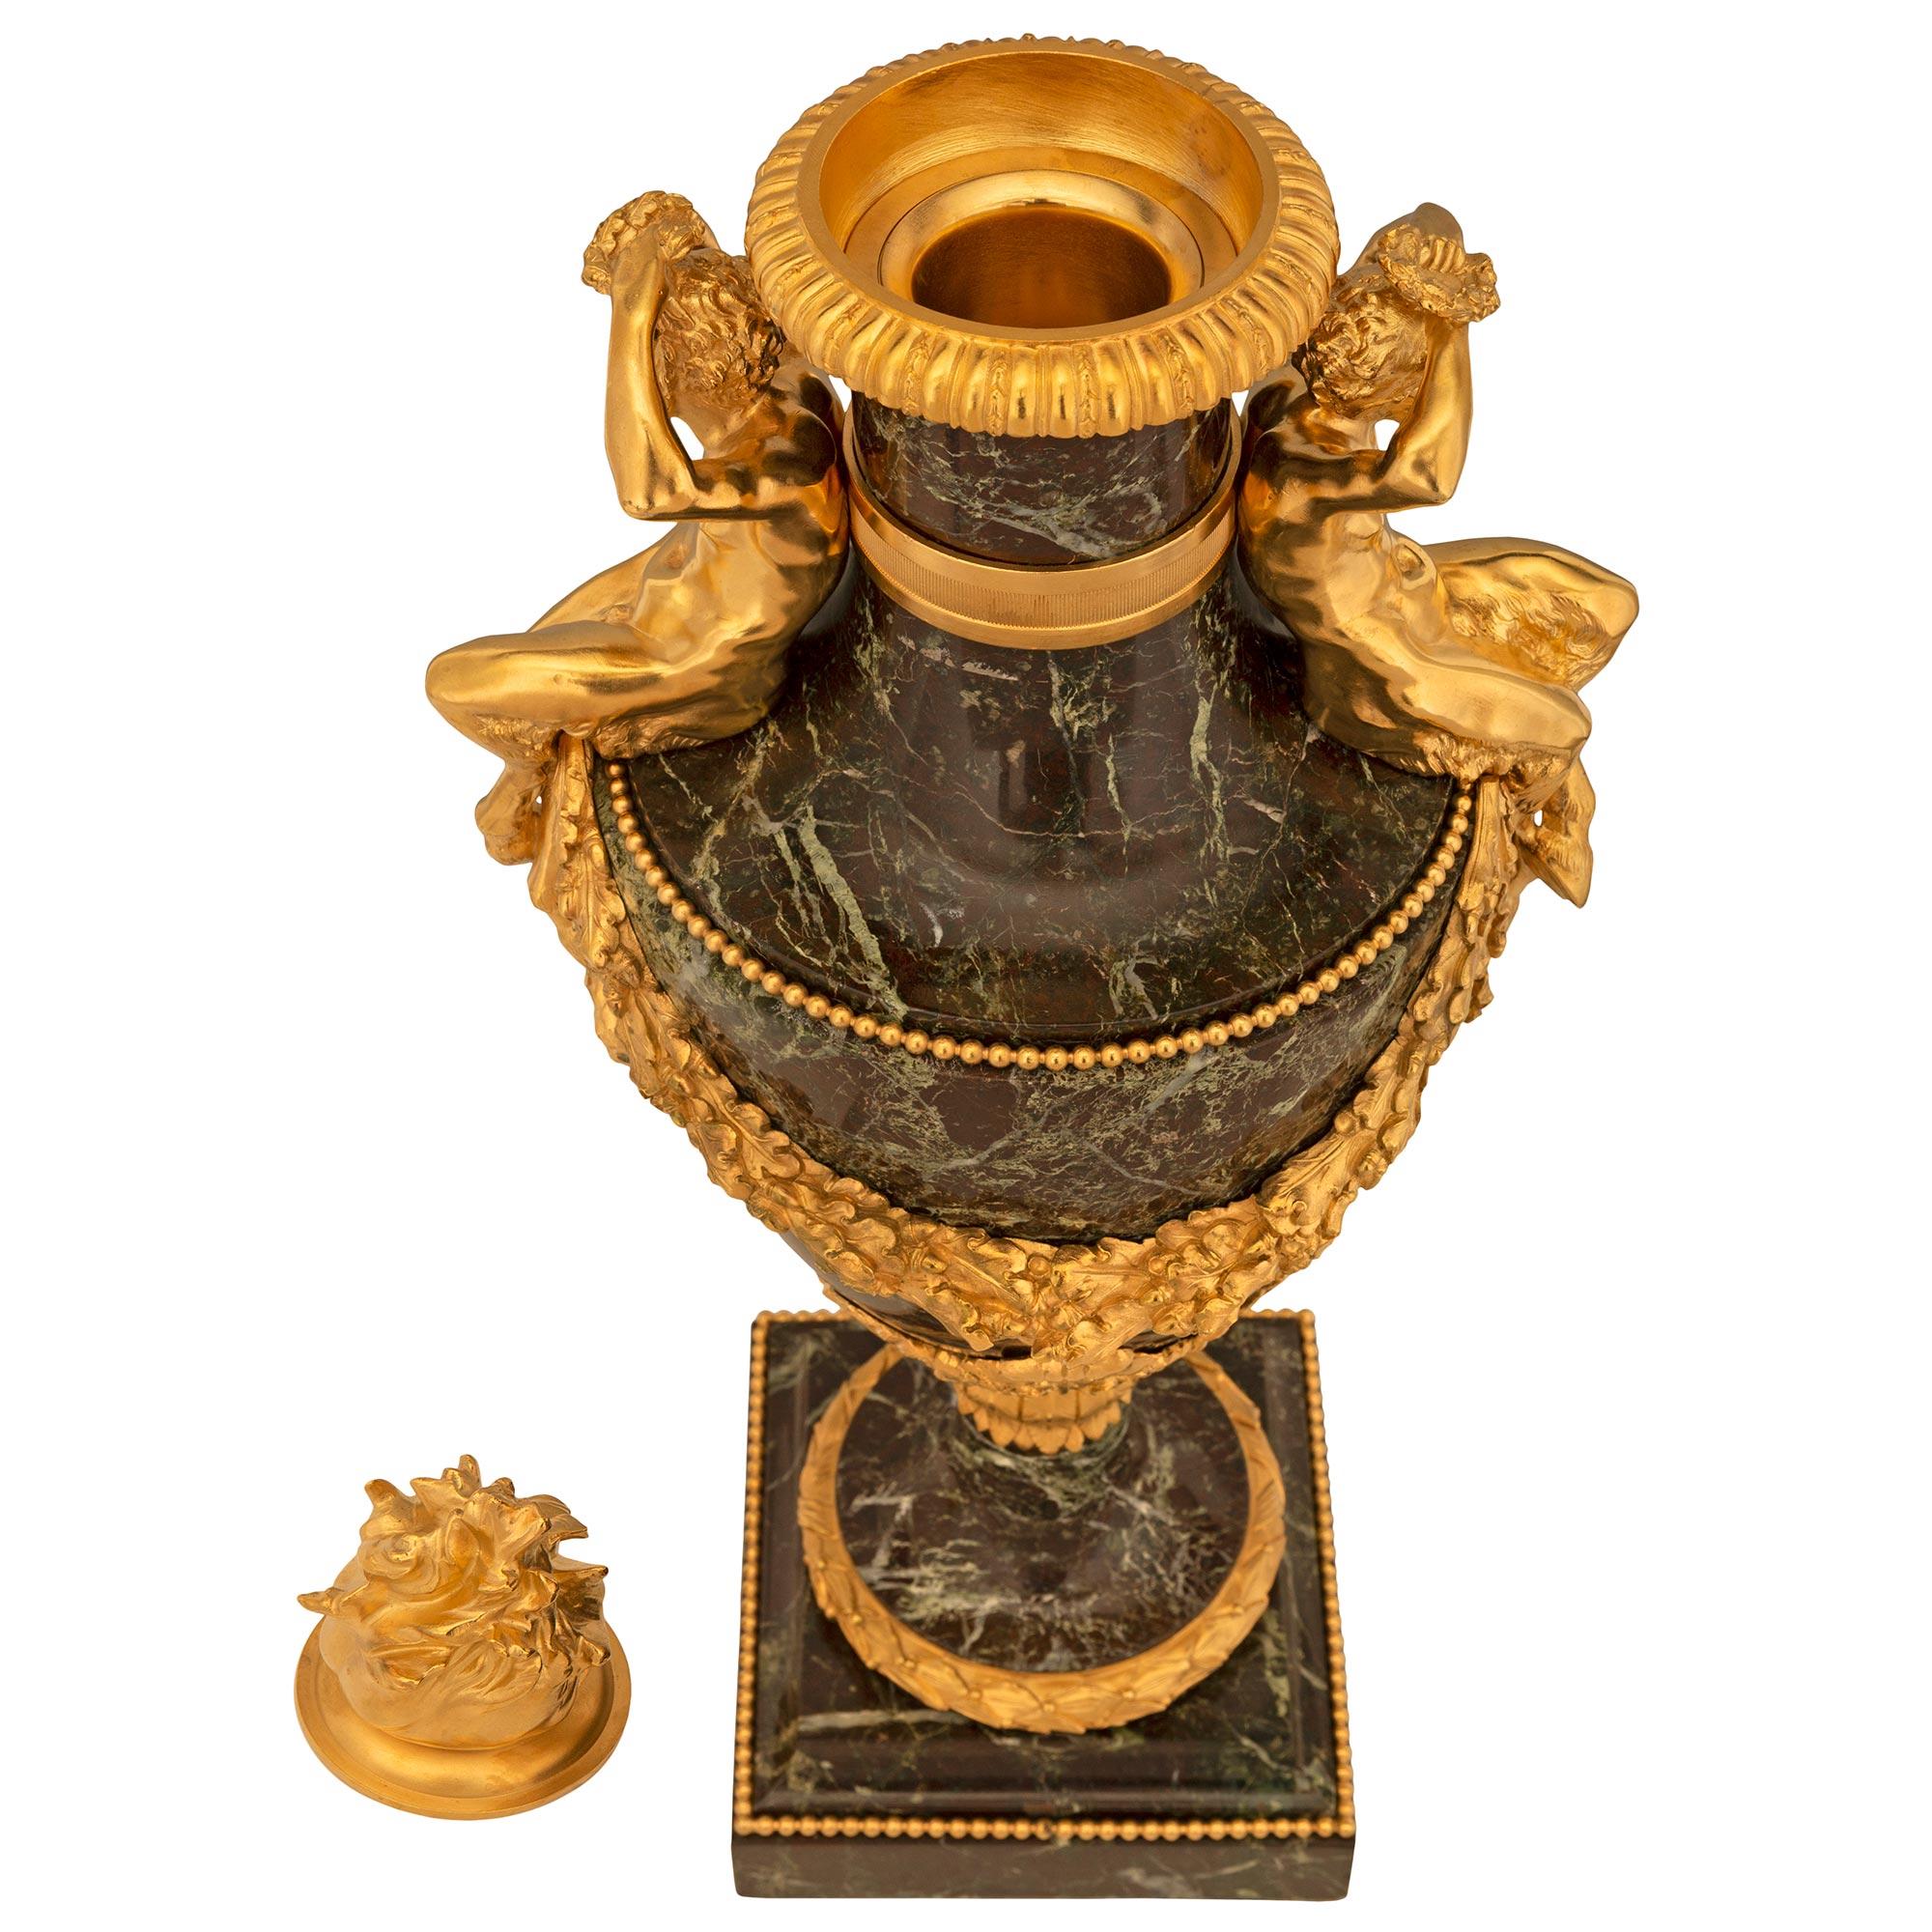 Magnifique paire d'urnes à couvercle en marbre Rosso Levanto et bronze doré d'époque Belle Époque et de style Louis XVI du XIXe siècle. Chaque urne est surmontée d'une base carrée avec une fine bordure mouchetée, une bande perlée enveloppante et une